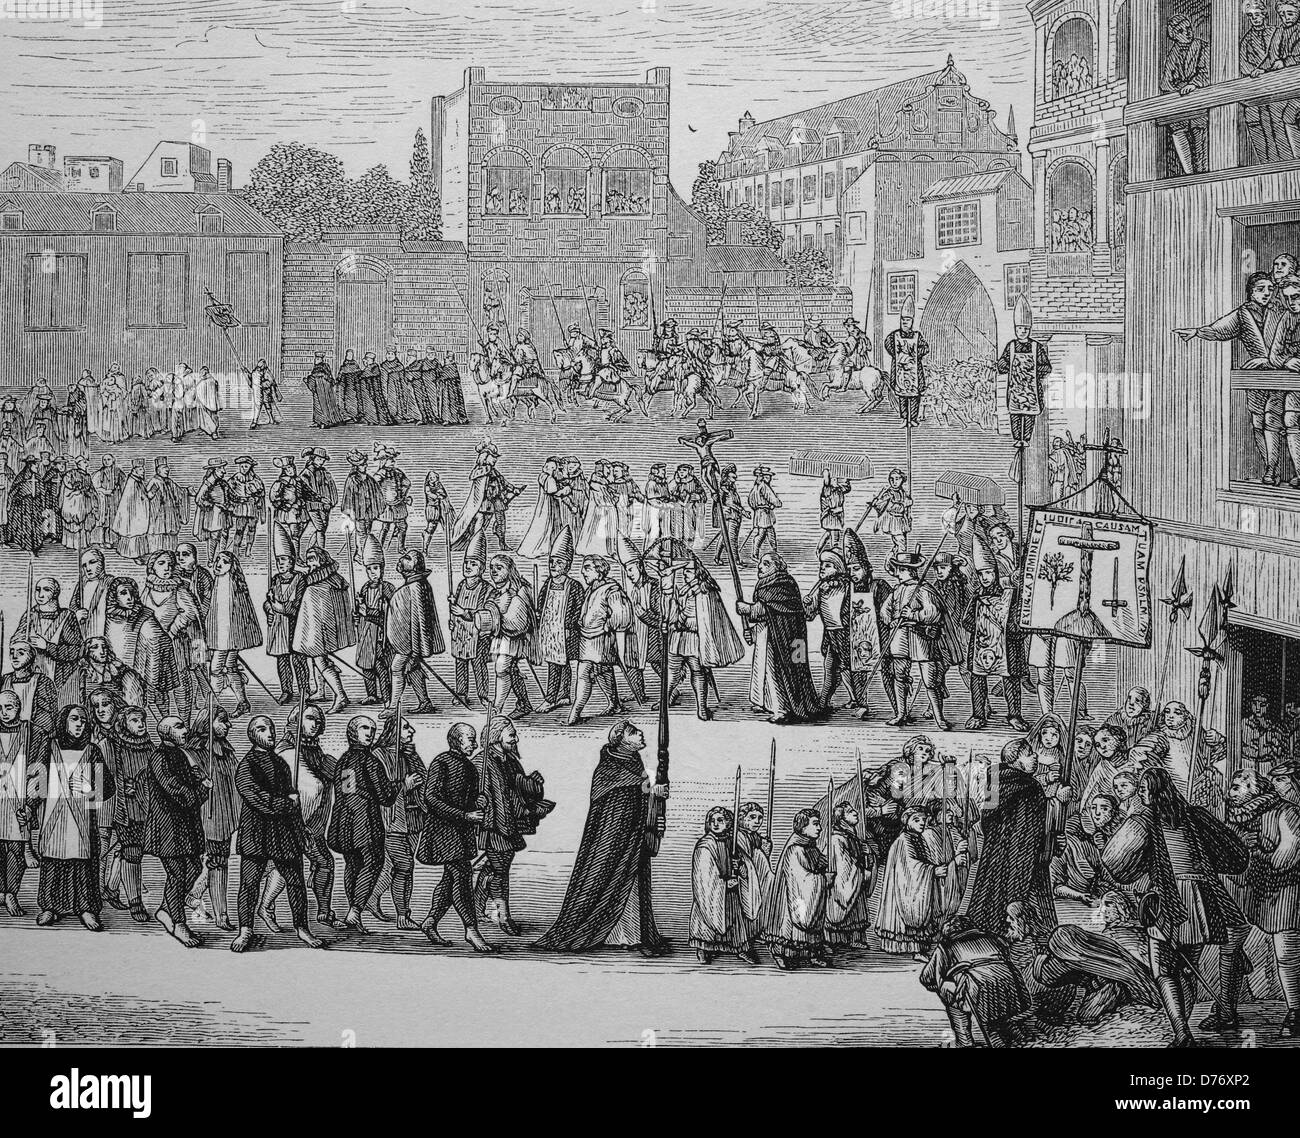 Procession d'un auto-da-fé, inquisition, gravure sur bois de 1880 Banque D'Images